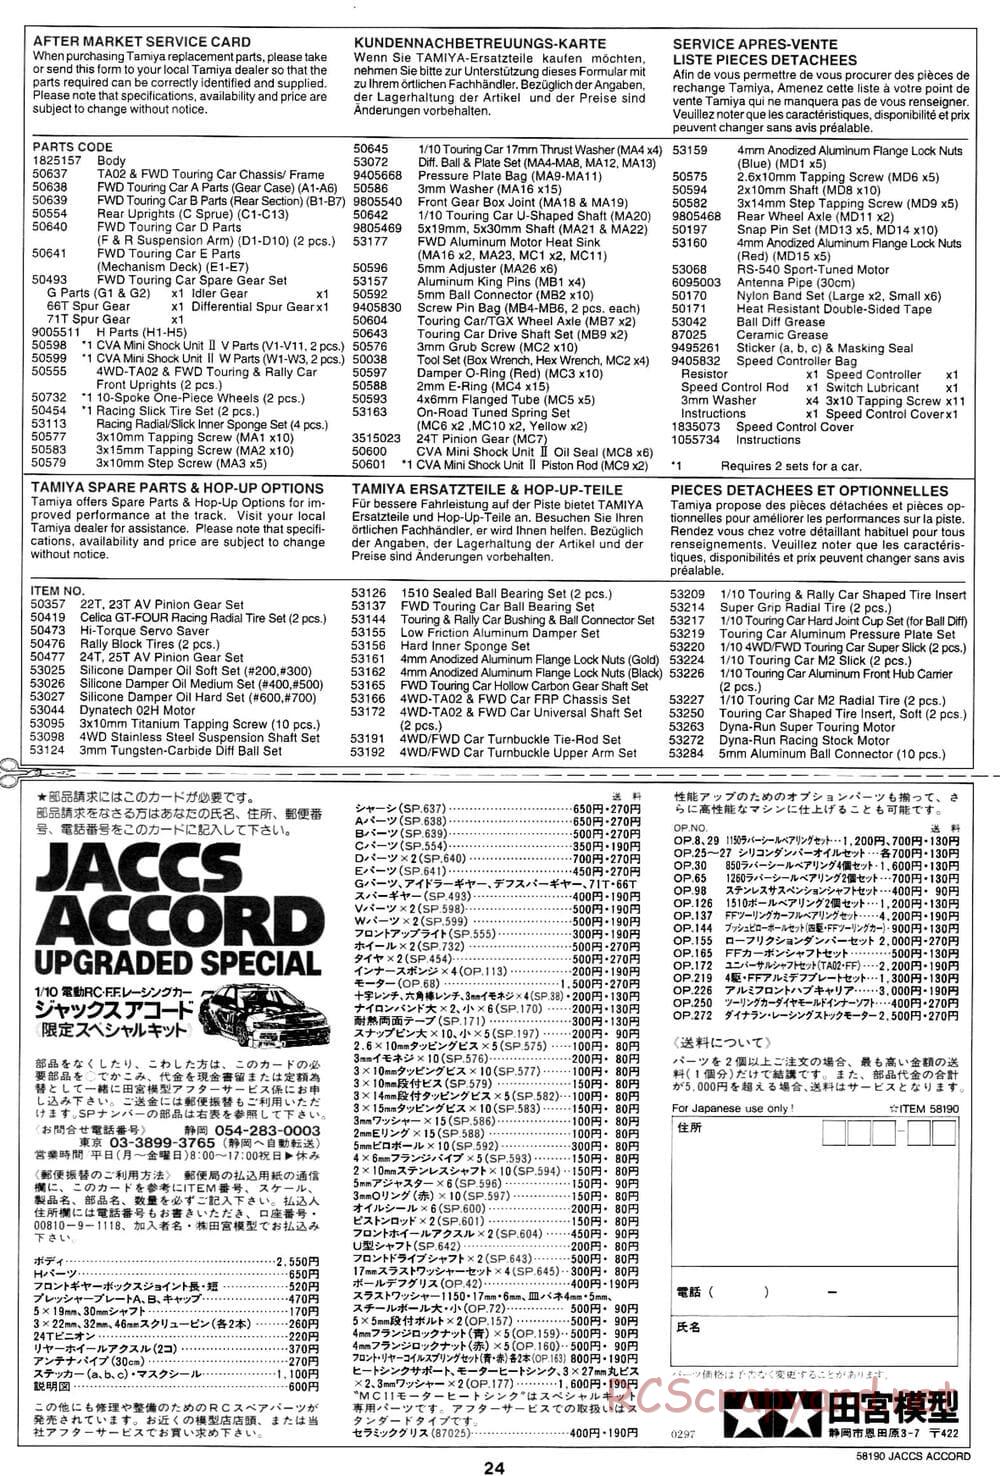 Tamiya - JACCS Honda Accord - FF-01 Chassis - Manual - Page 24